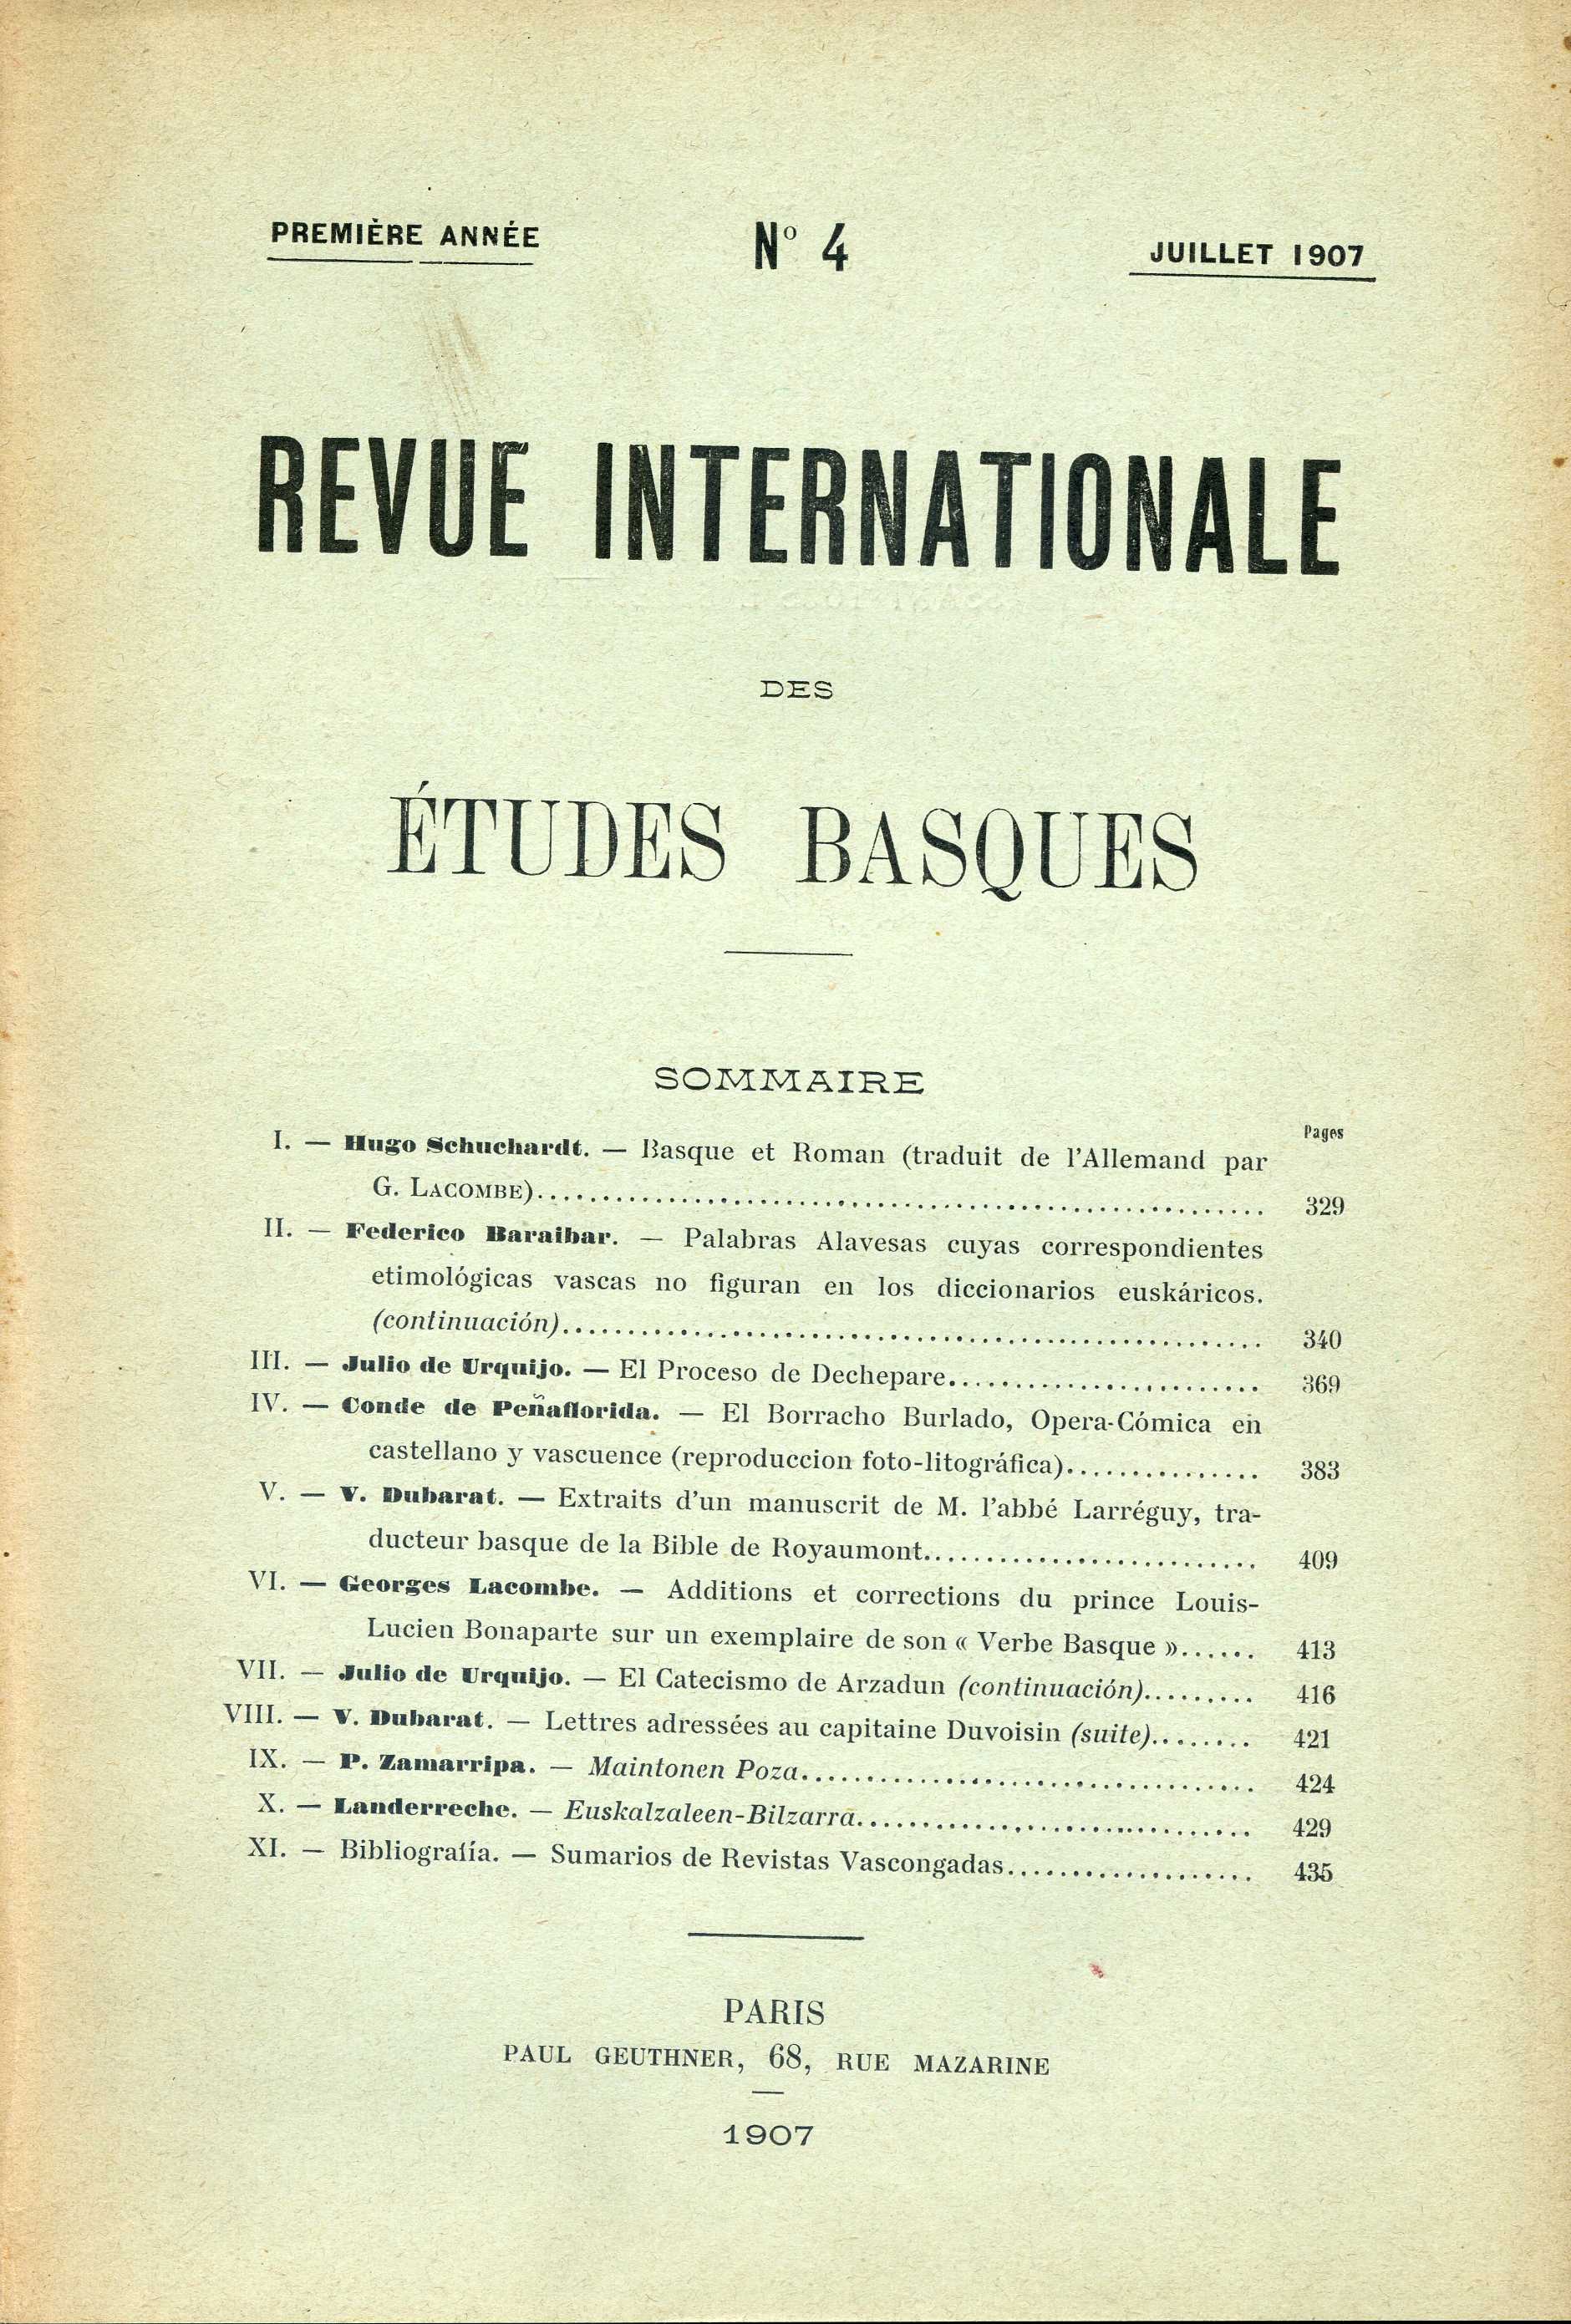 Additions et corrections du Prince Louis-Lucien Bonaparte sur un exemplaire de son "Verbe basque"